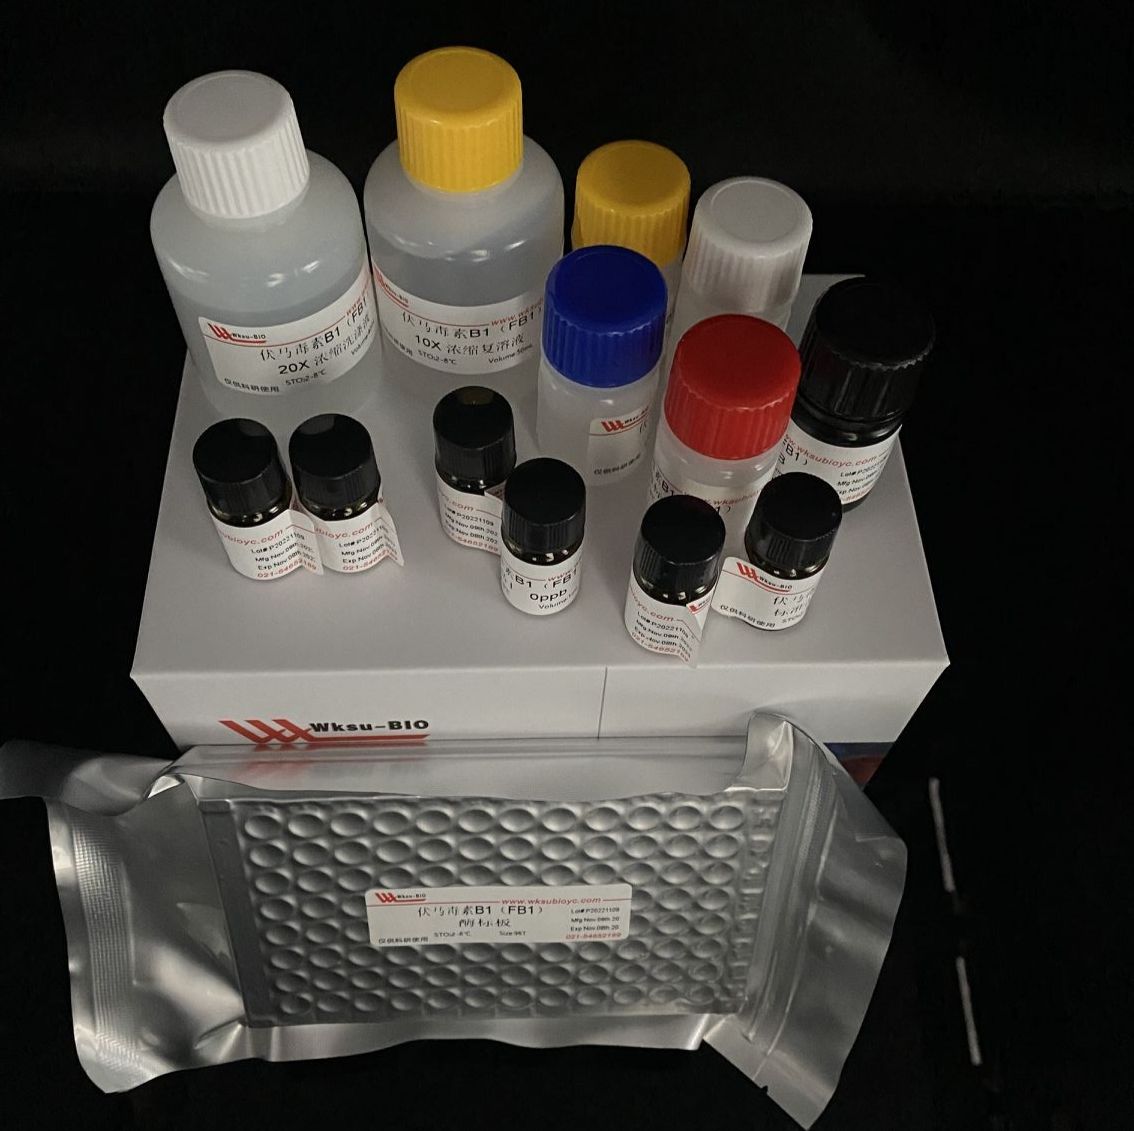 半纤维素酶/木聚糖酶试剂盒,微板法